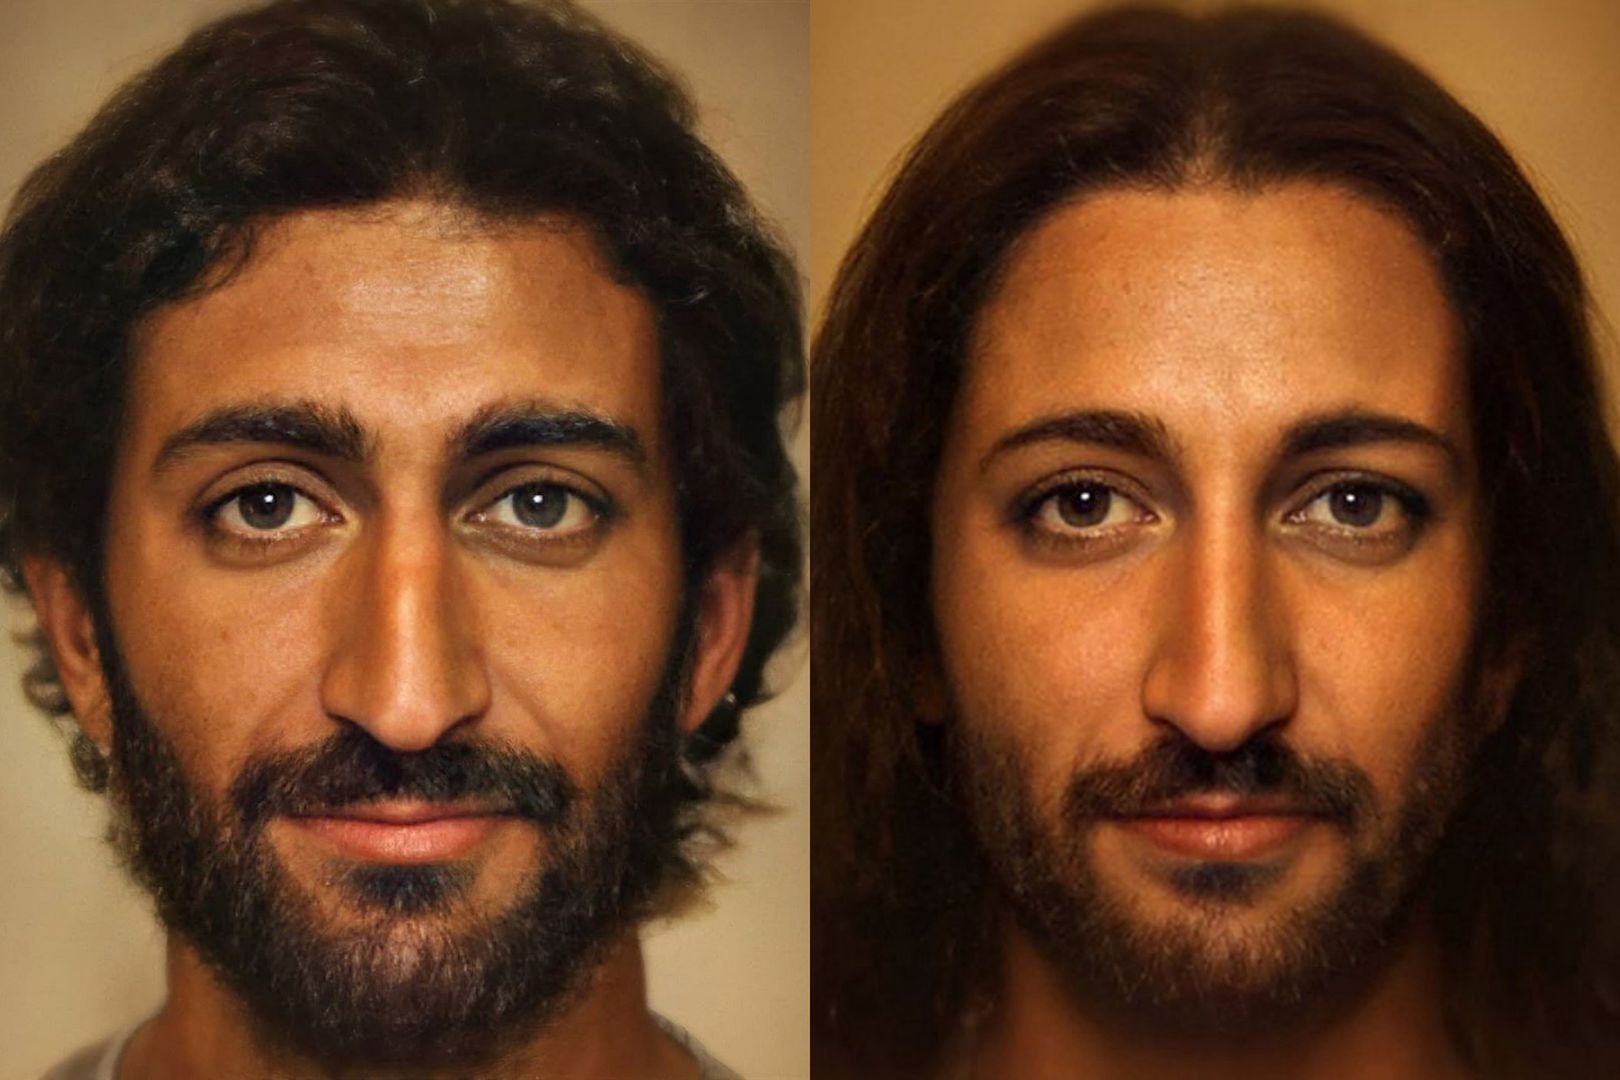 Holender odtworzył wizerunek Jezusa Chrystusa. Wybitnie realistyczny efekt